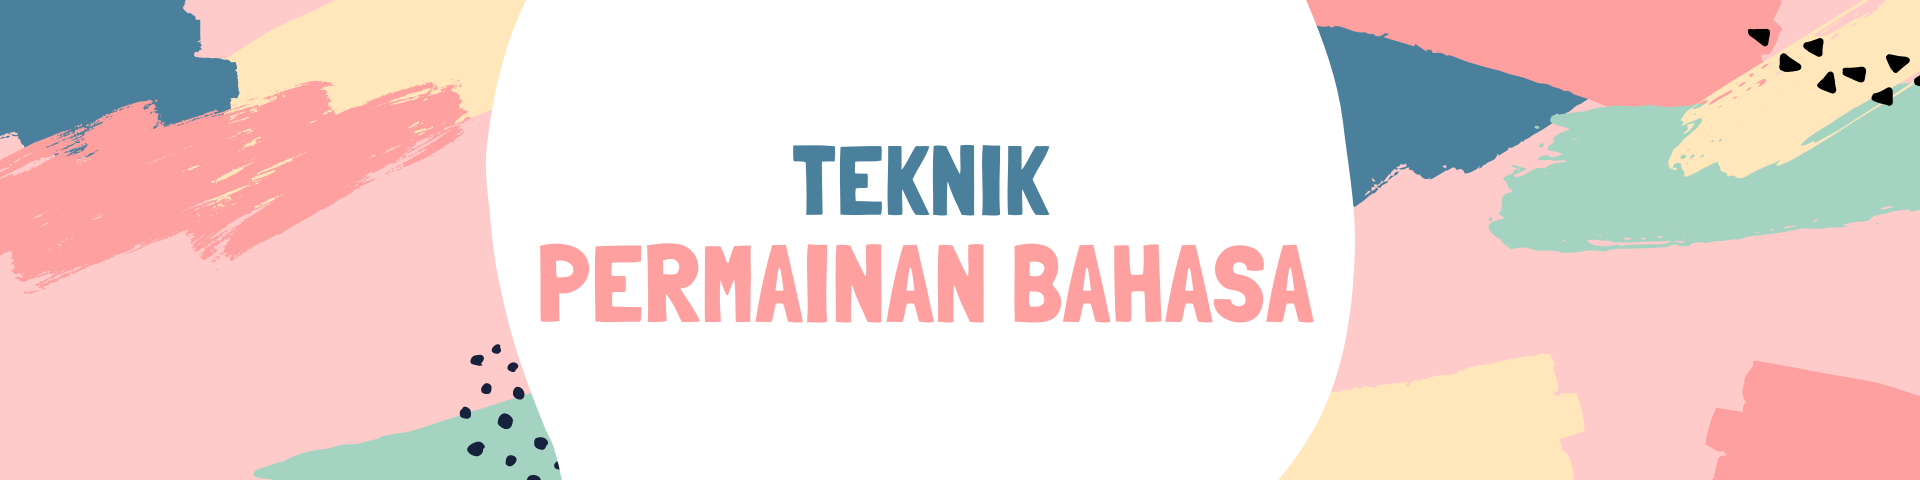 Teknik dan Konsep Bahasa Melayu: Teknik Permainan Bahasa